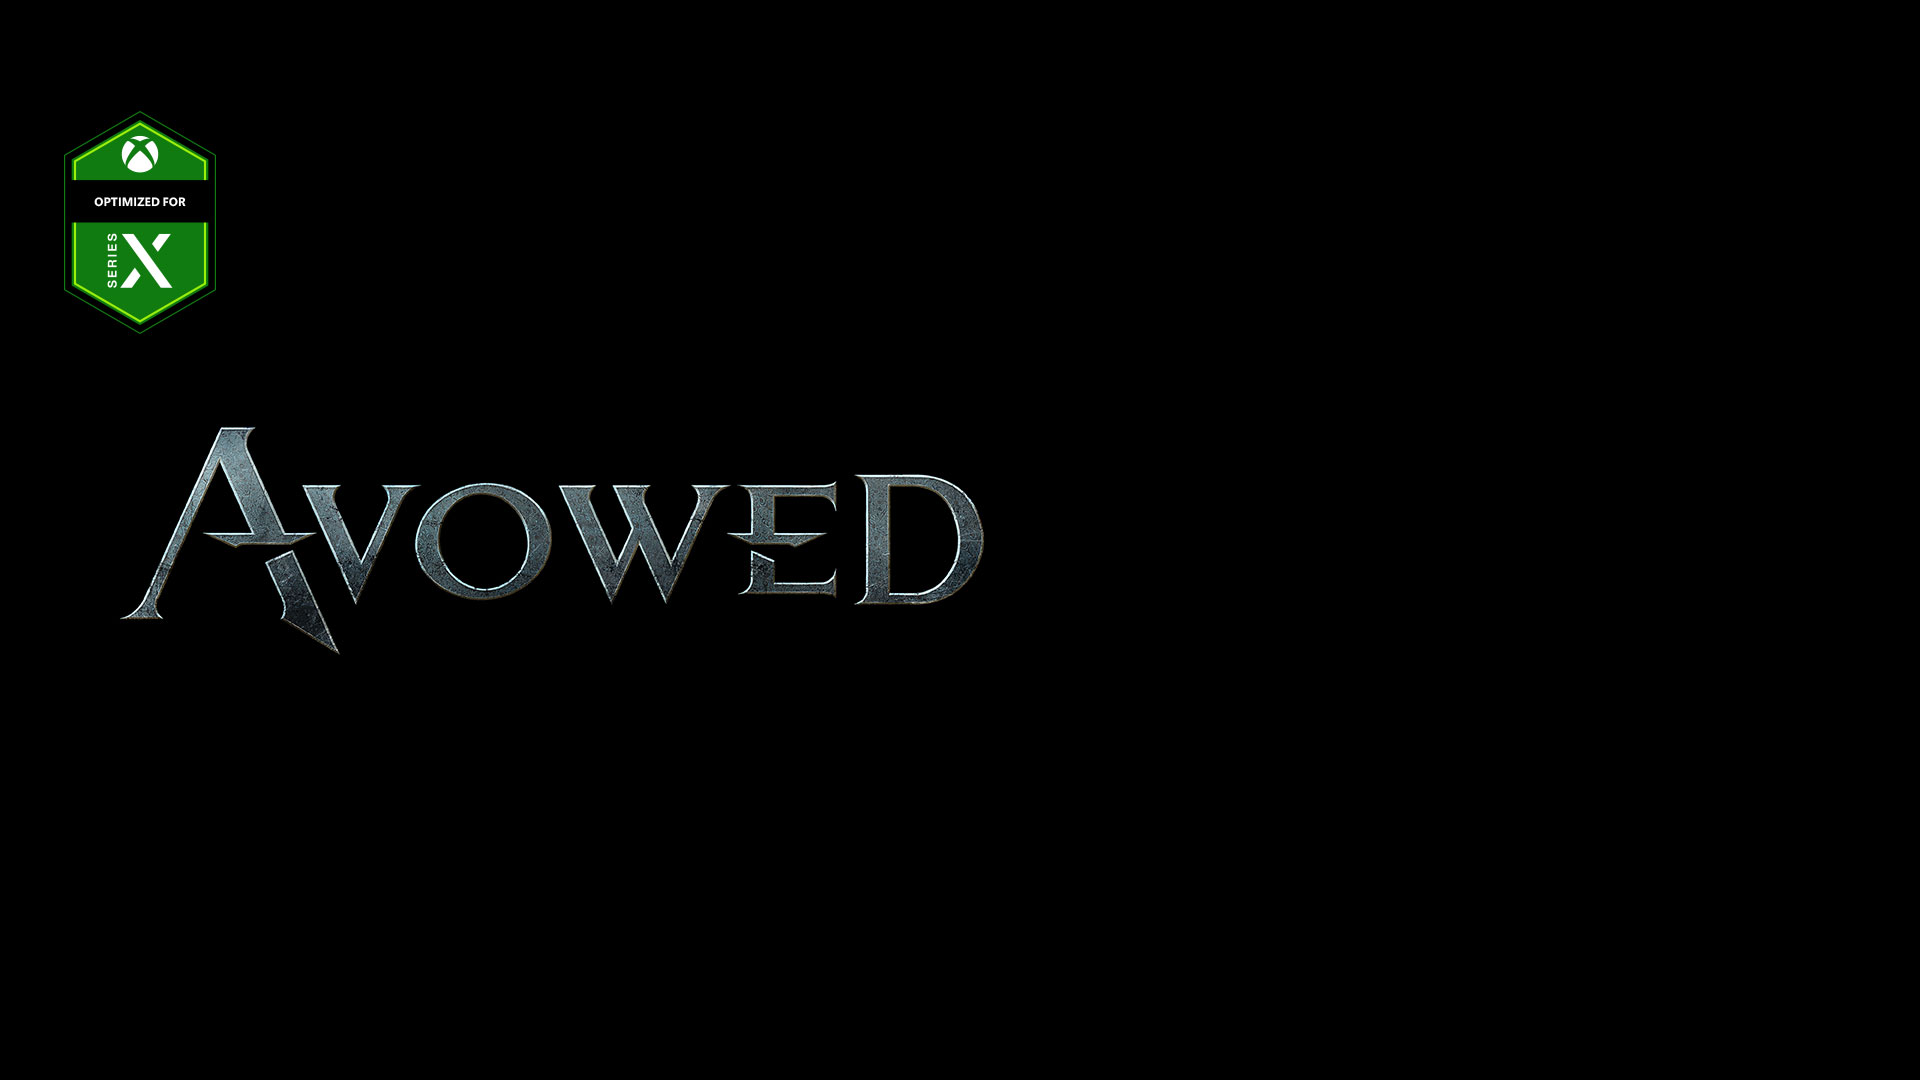 Logotipo de Avowed, logitpo de Optimizado para Series X en el fondo